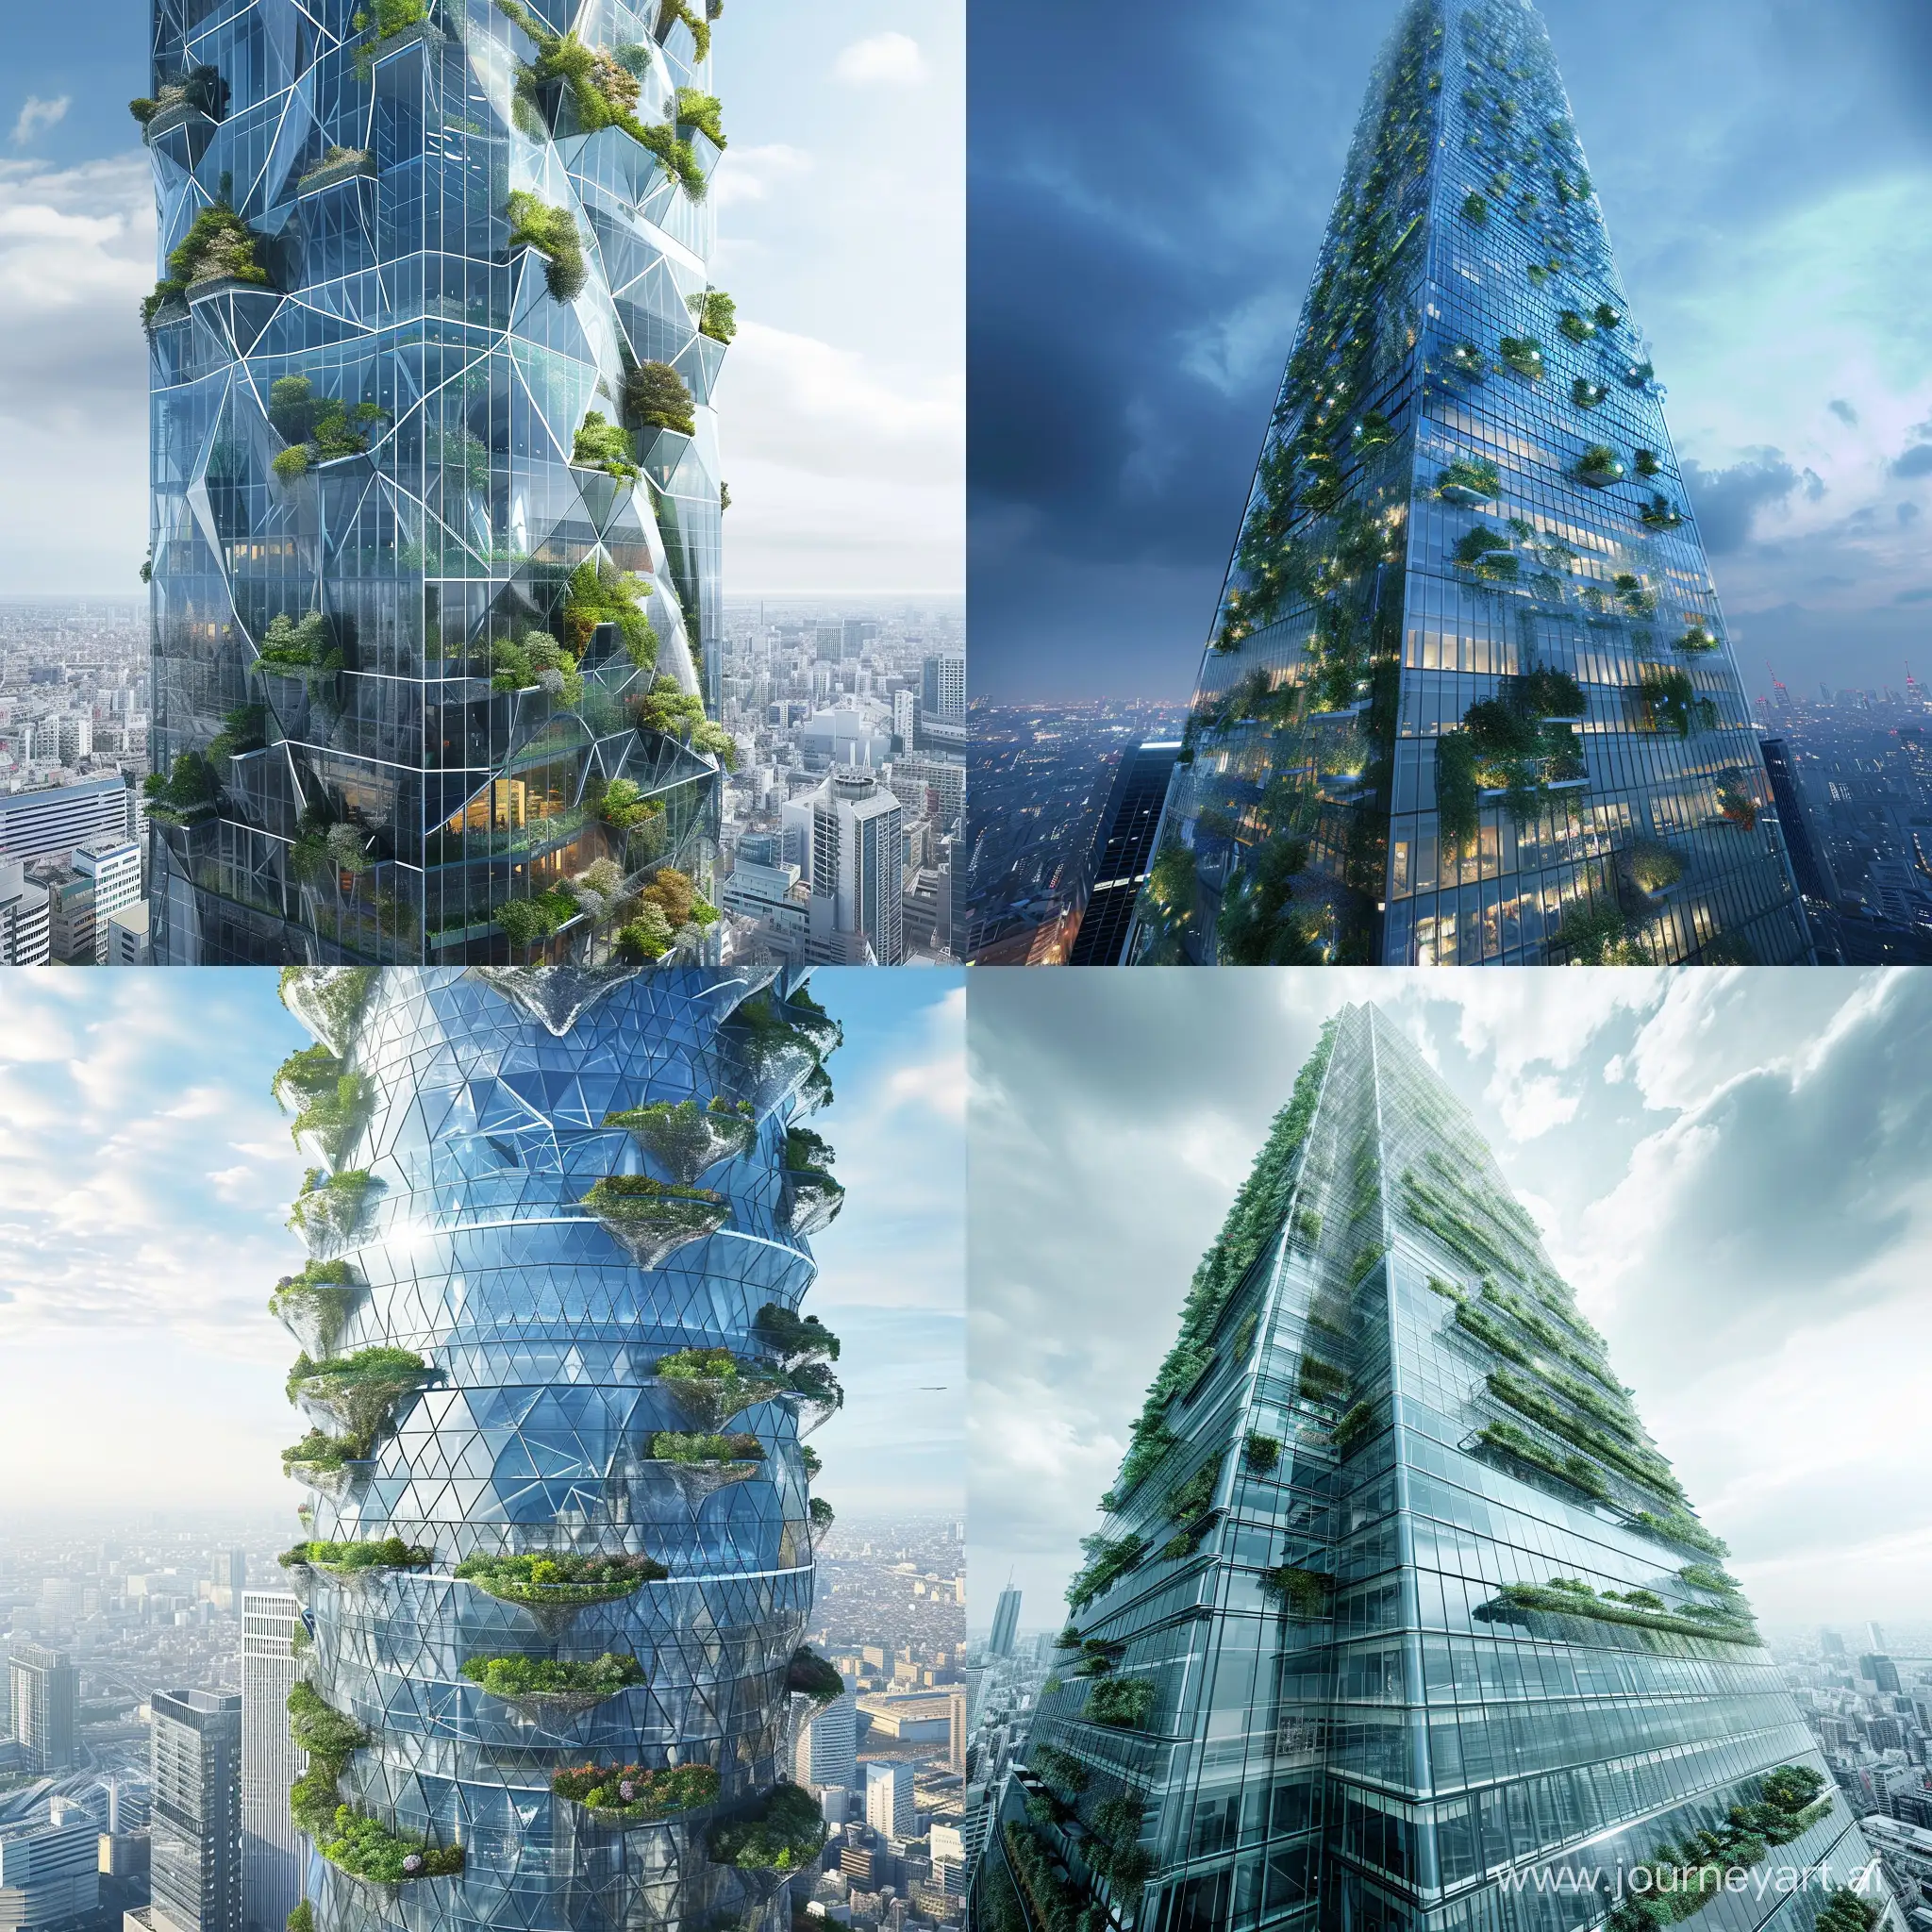 Rascacielos de Cristal Futurista en Tokio, con fachada paramétrica, jardines colgantes . Diseño inspirado en la tecnología y la innovación